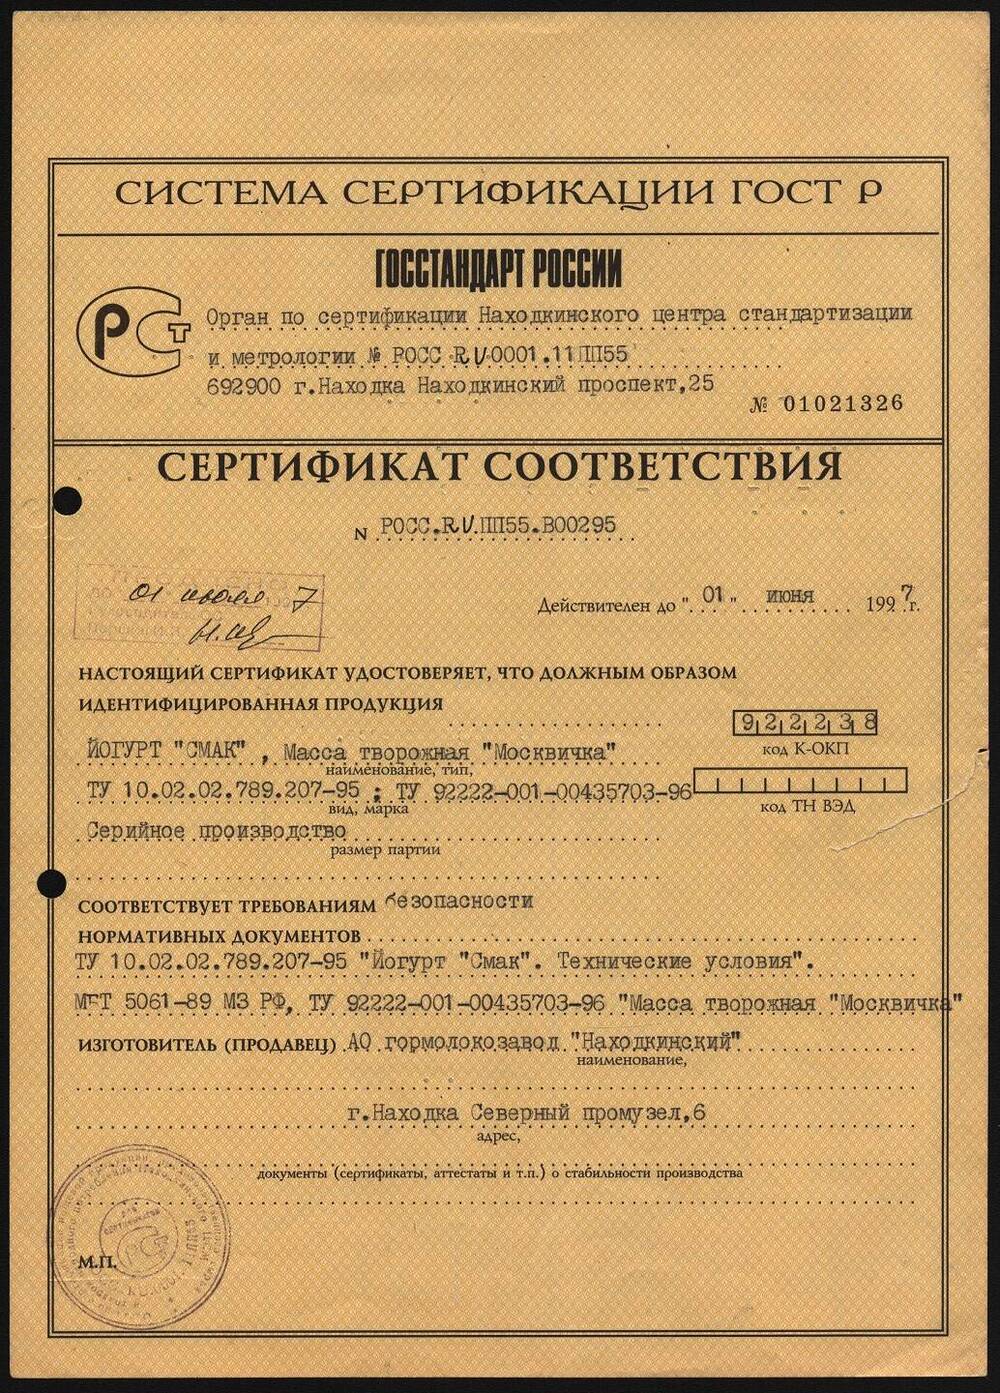 Сертификат соответствия на удостоверение и идентификацию продукции АО гормолокозавод Находкинский.